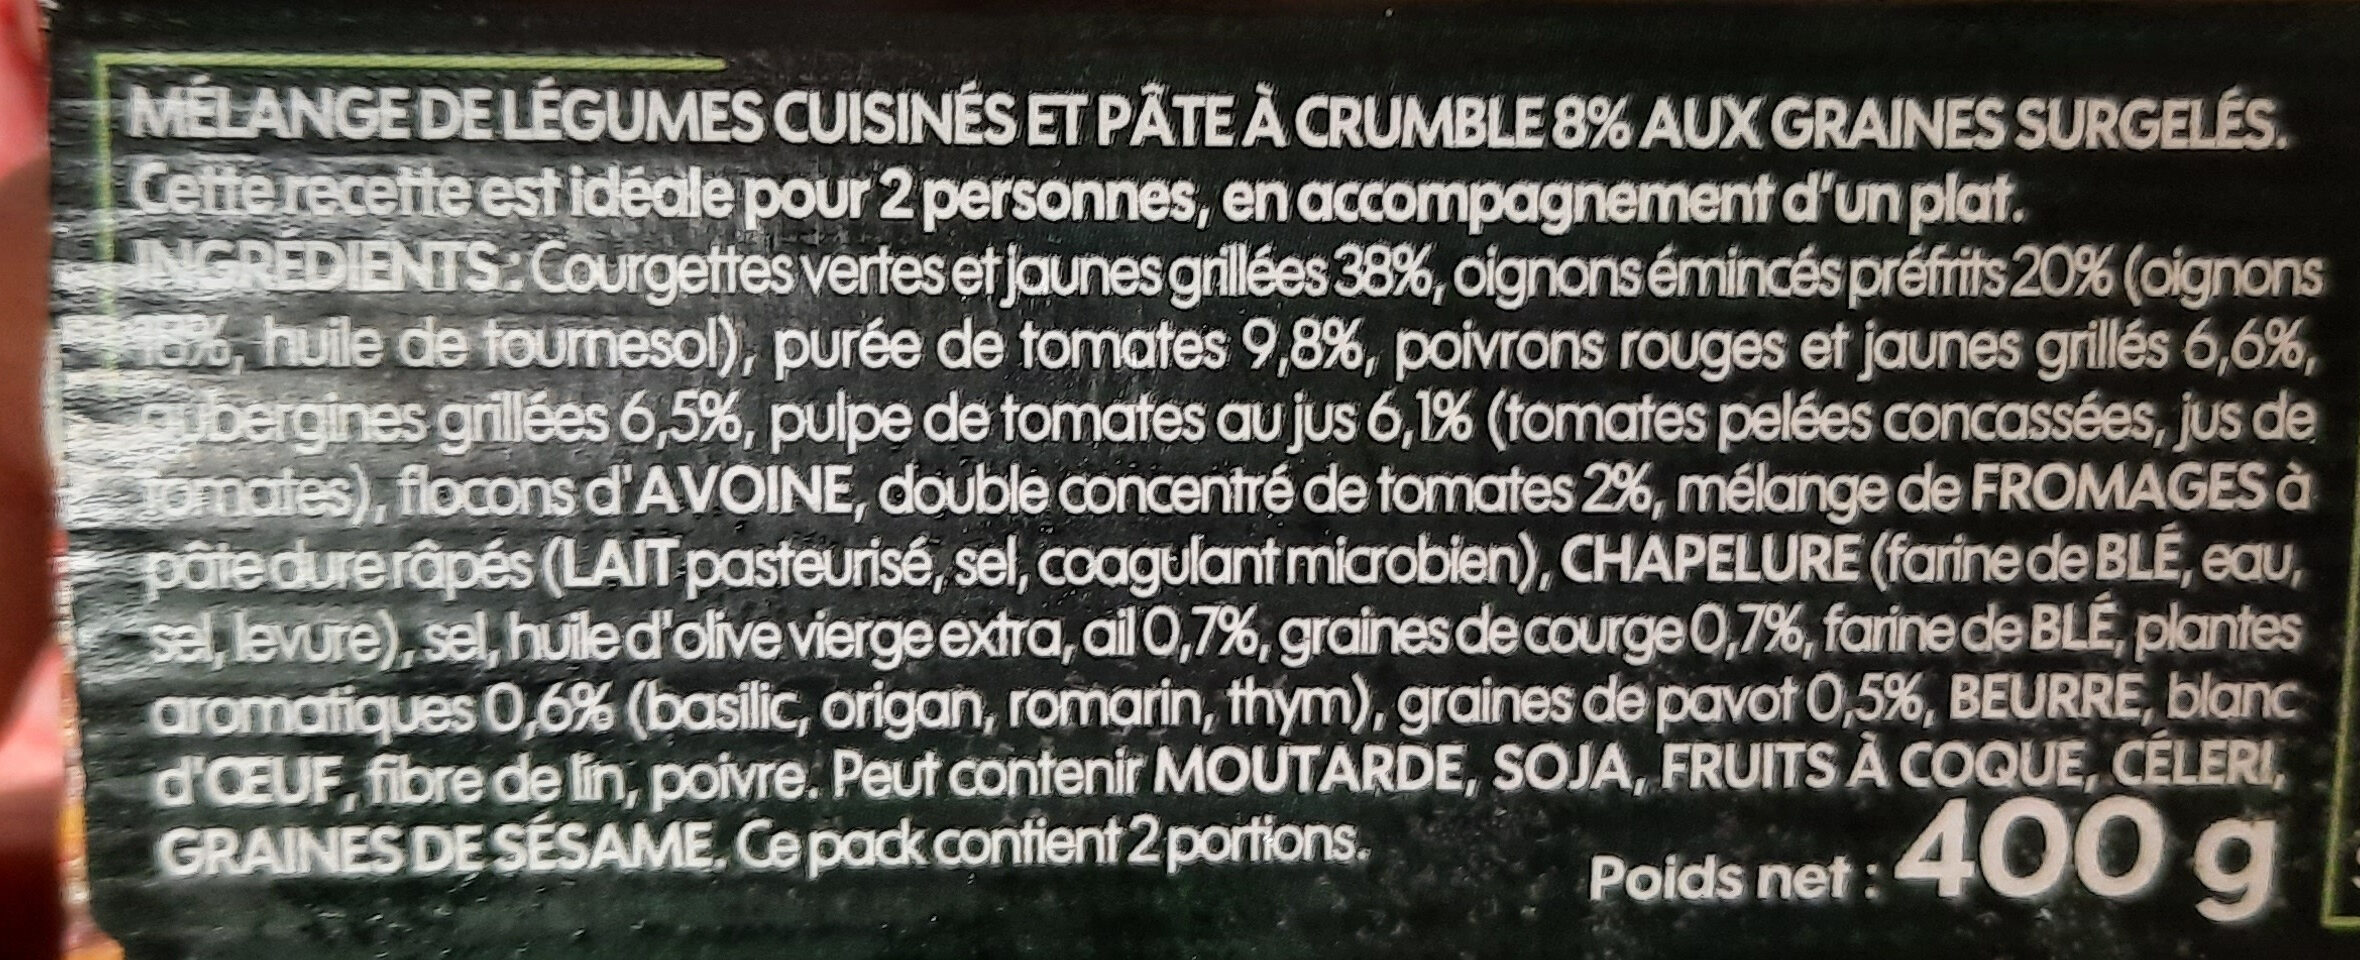 Légumes à la provençale crumble aux graines de courges - Ingrediënten - fr